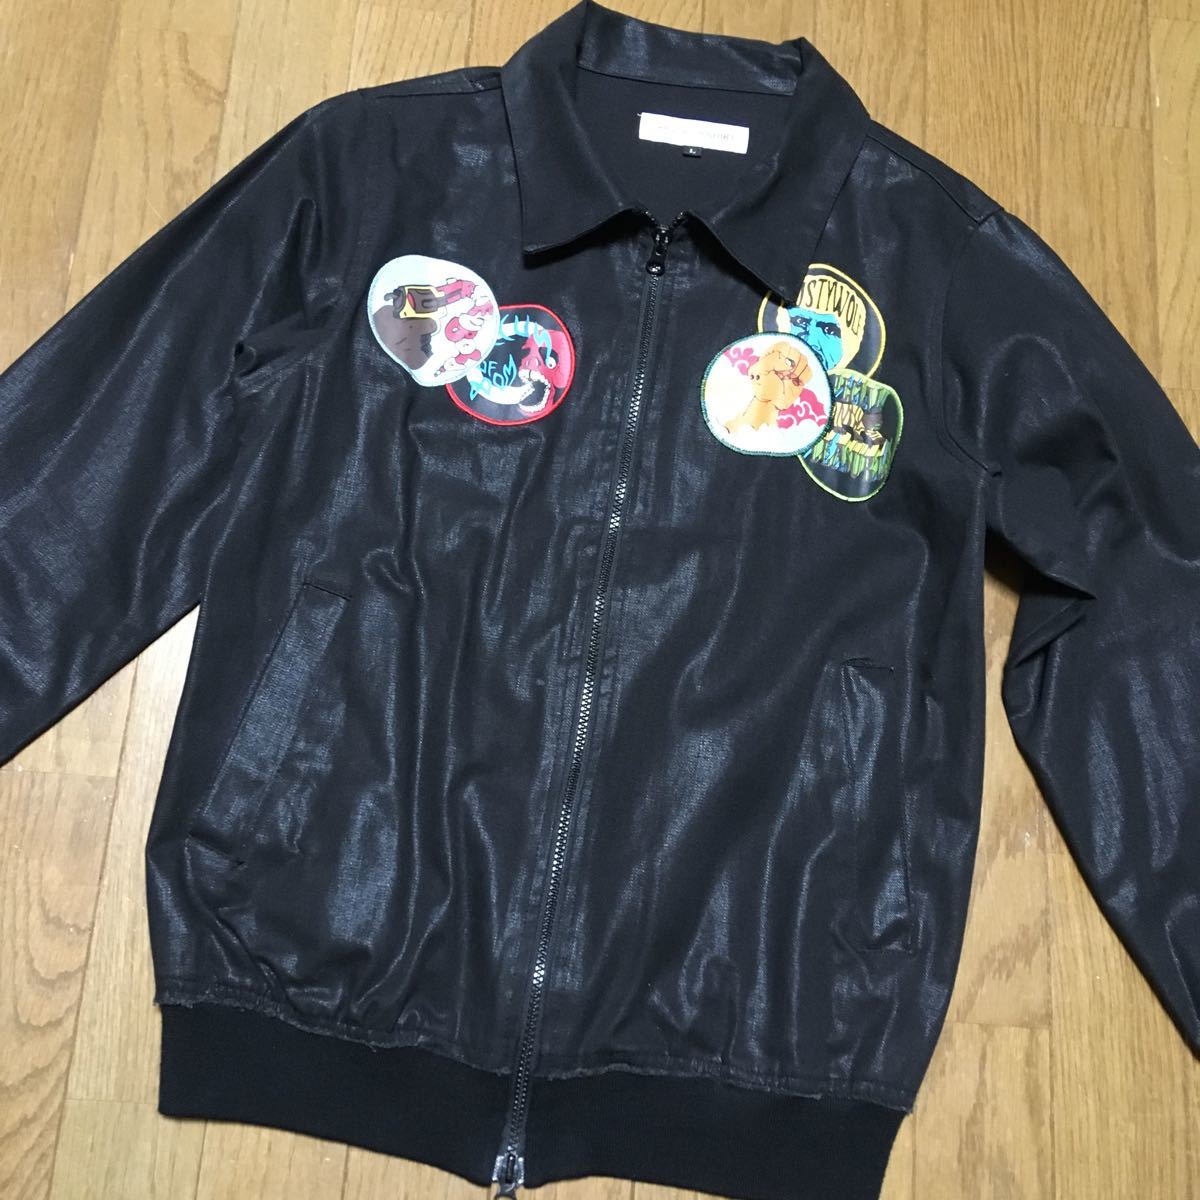  Comme des Garcons Japanese sovenir jacket badge flight jacket 